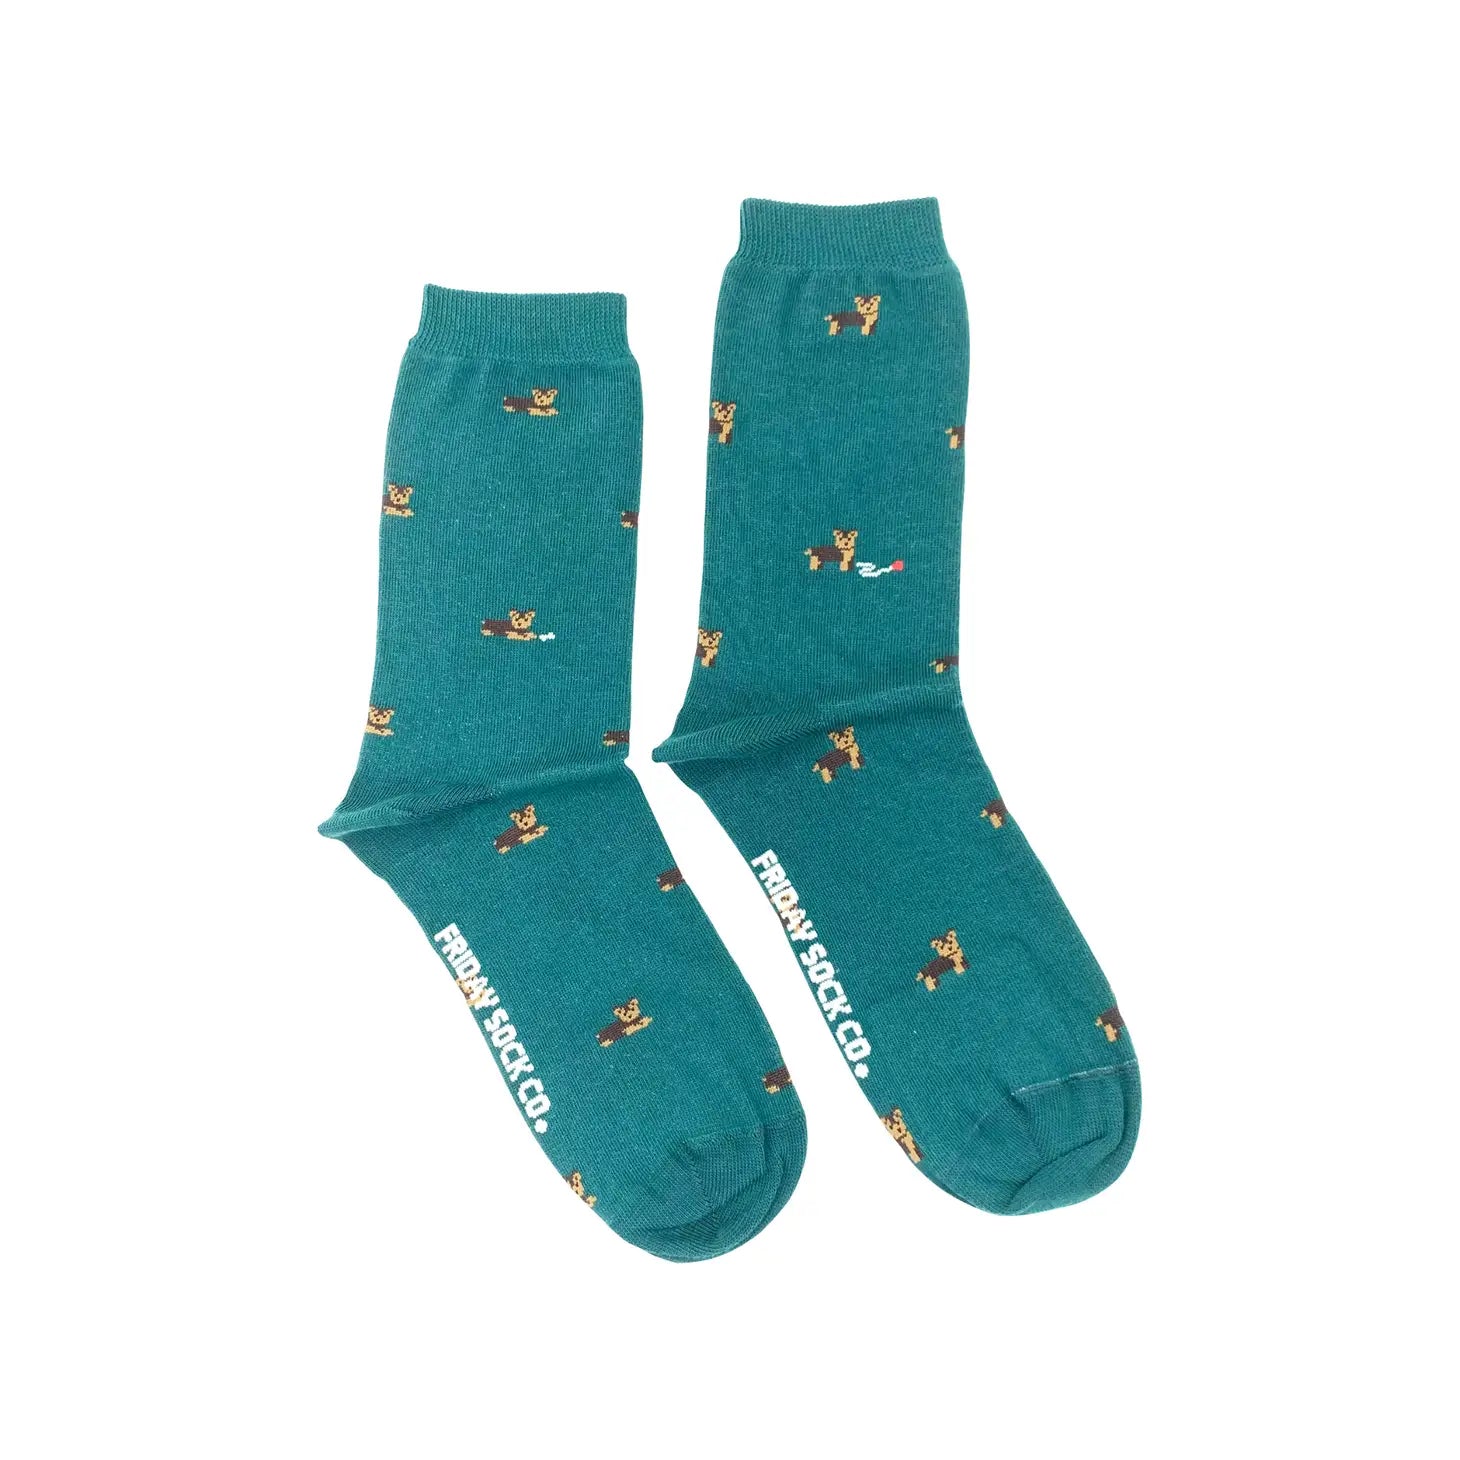 Friday Sock Co. - Men's Socks Toucan & Monstera